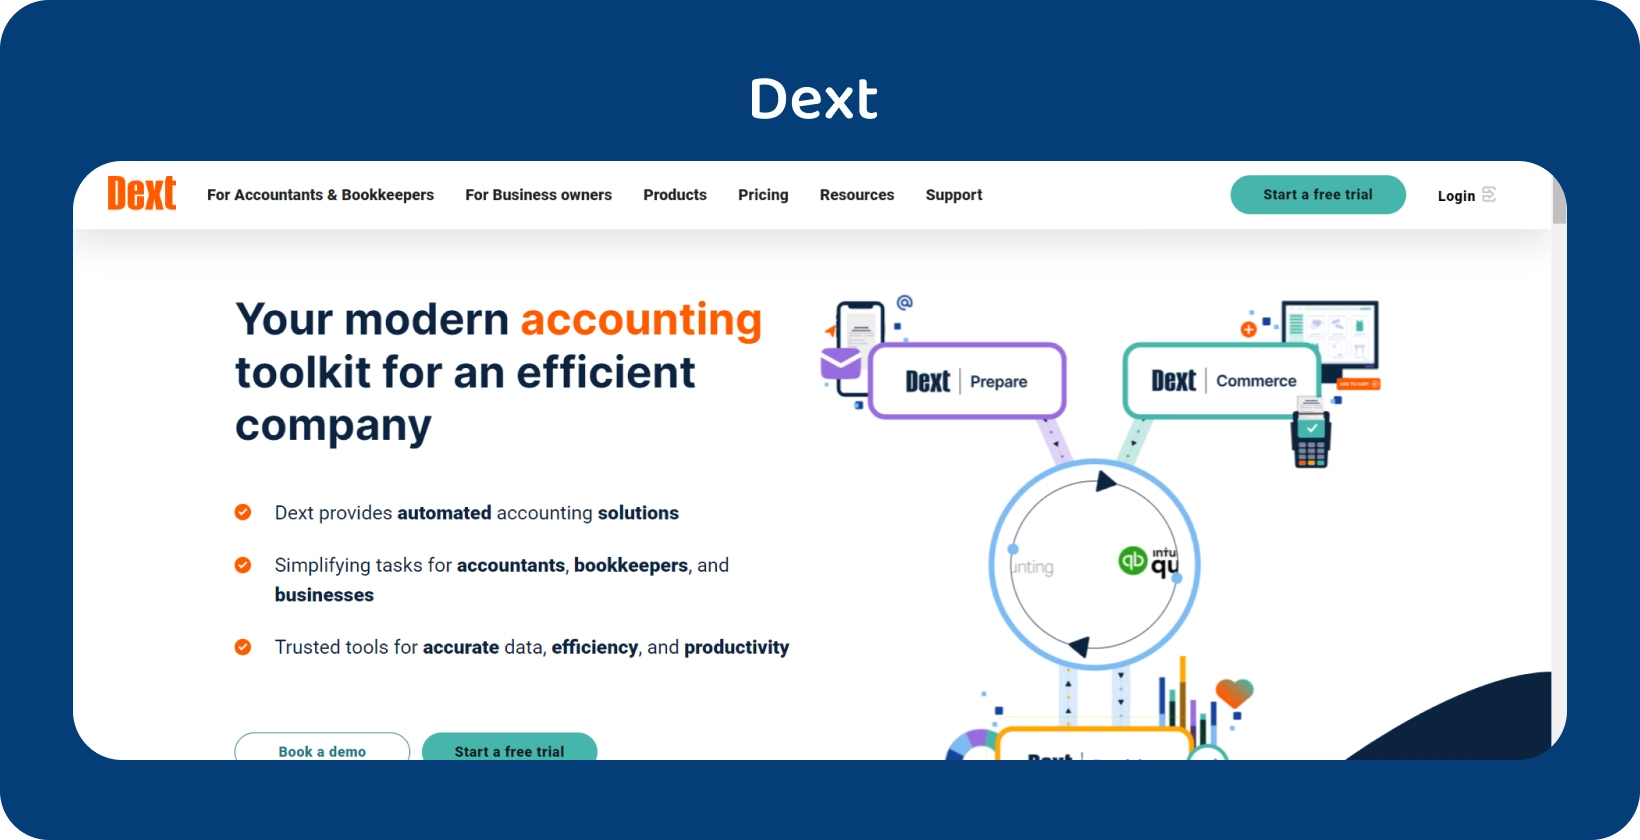 Špičkové rozhraní sady účetních nástrojů Dext zdůrazňuje automatizaci pro profesionály v oblasti účetnictví a účetnictví.